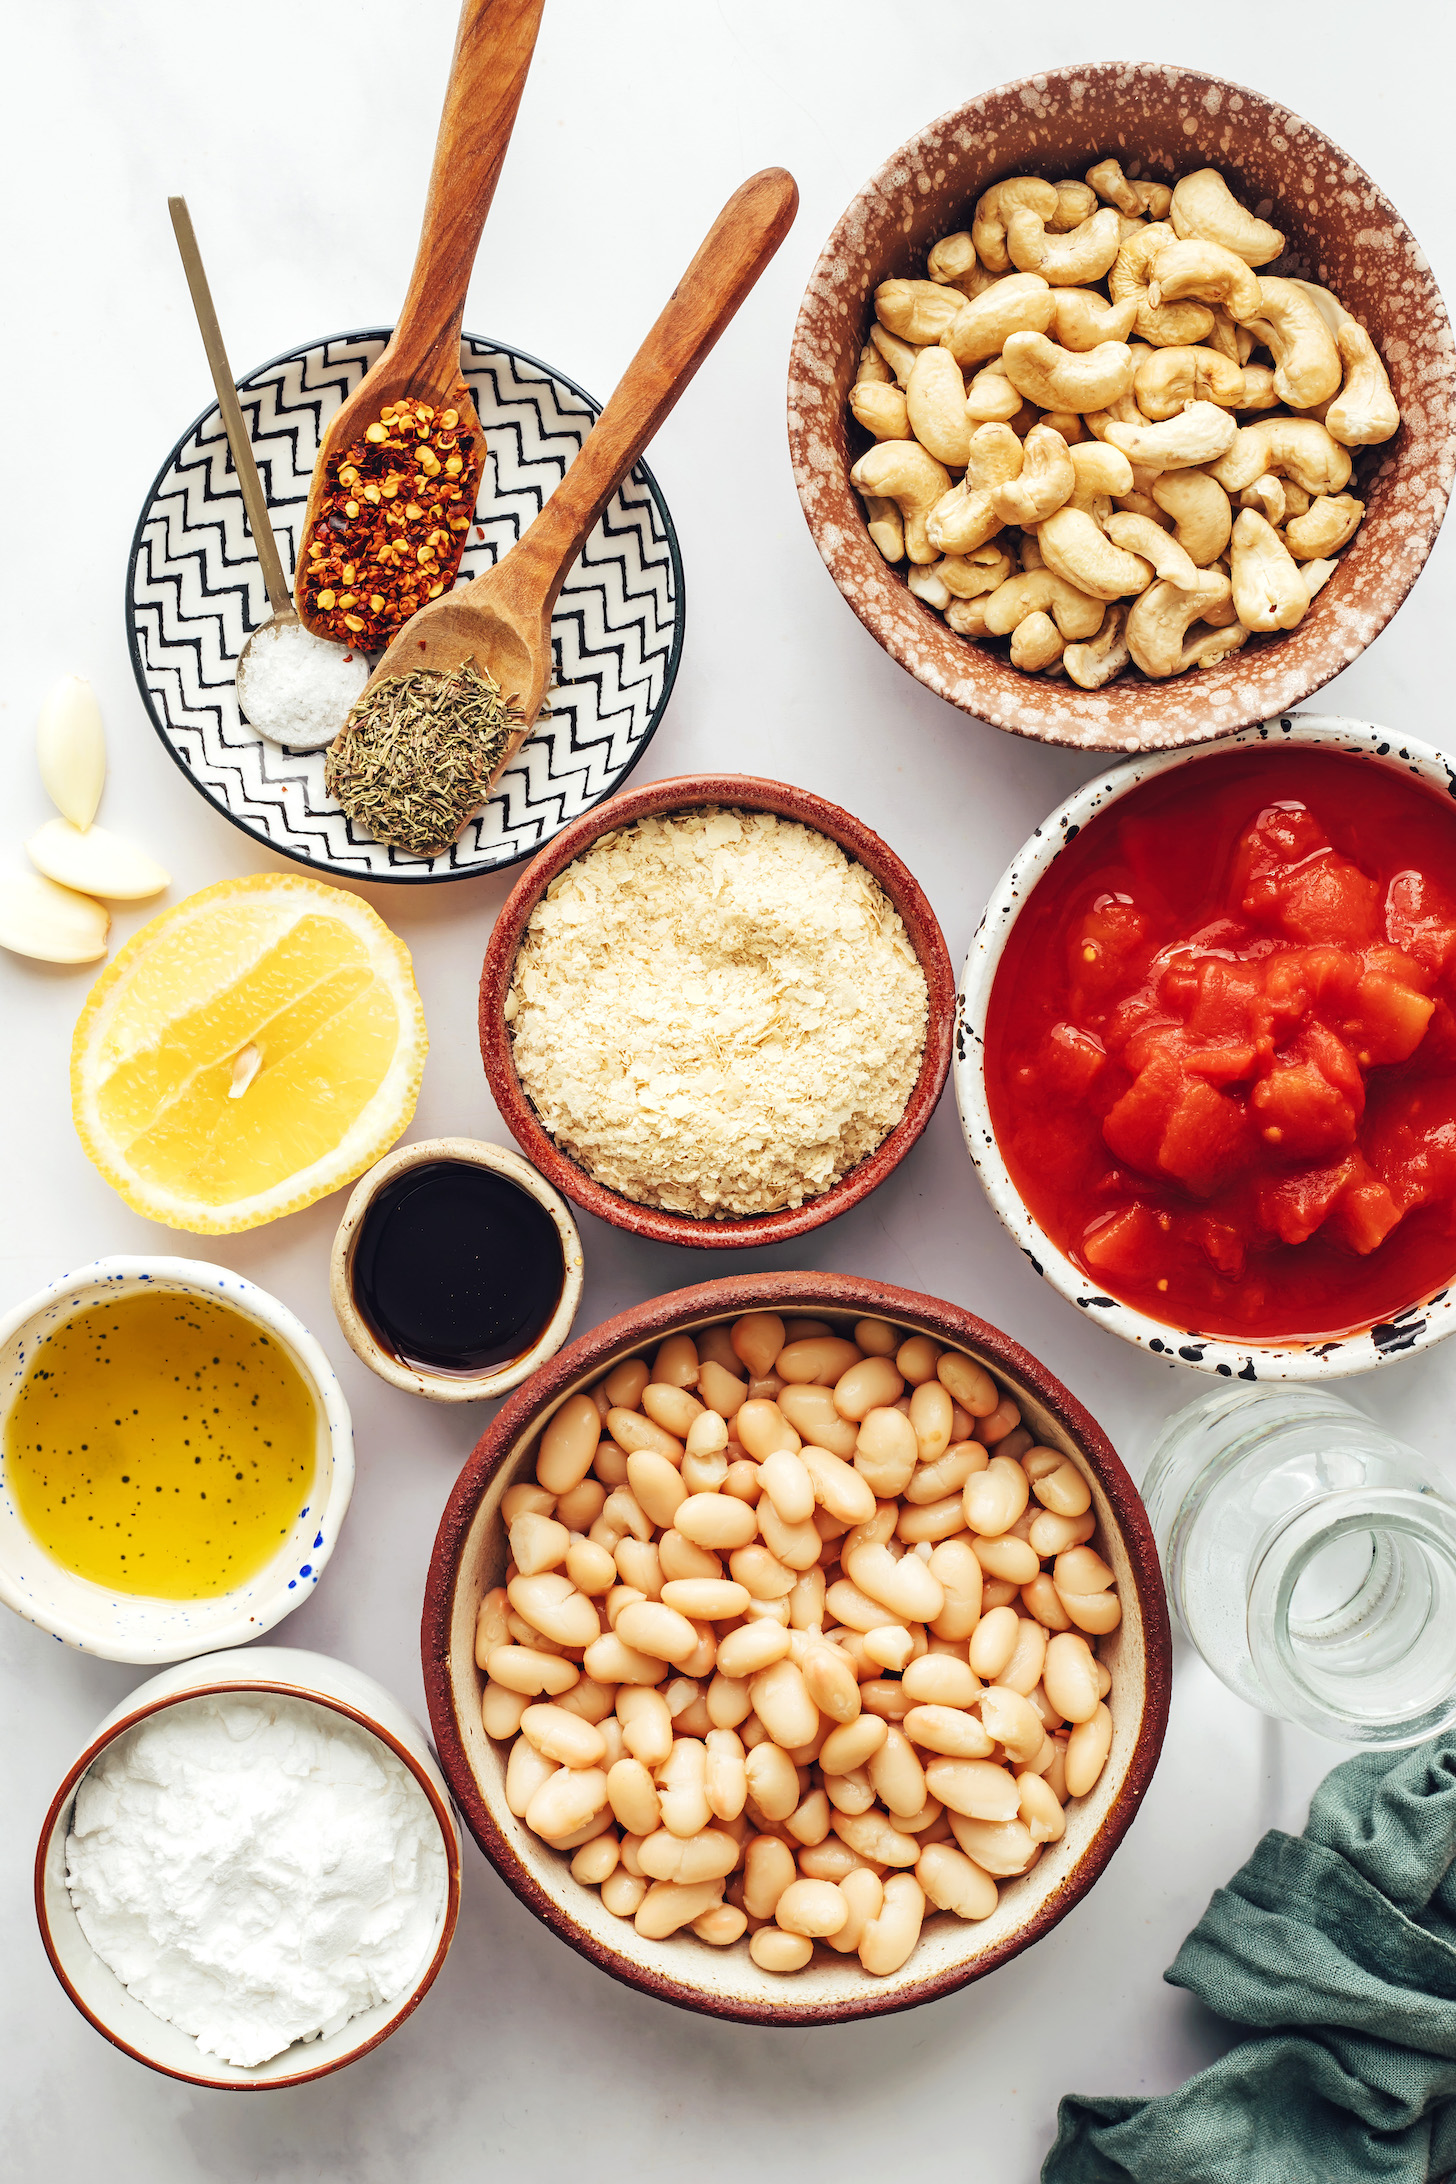 Cashewnüsse, Tomaten, weiße Bohnen, Tapiokastärke, Olivenöl, Ahornsirup, Zitrone, Nährhefe, getrocknete italienische Kräuter, Knoblauch, Salz und Paprikaflocken